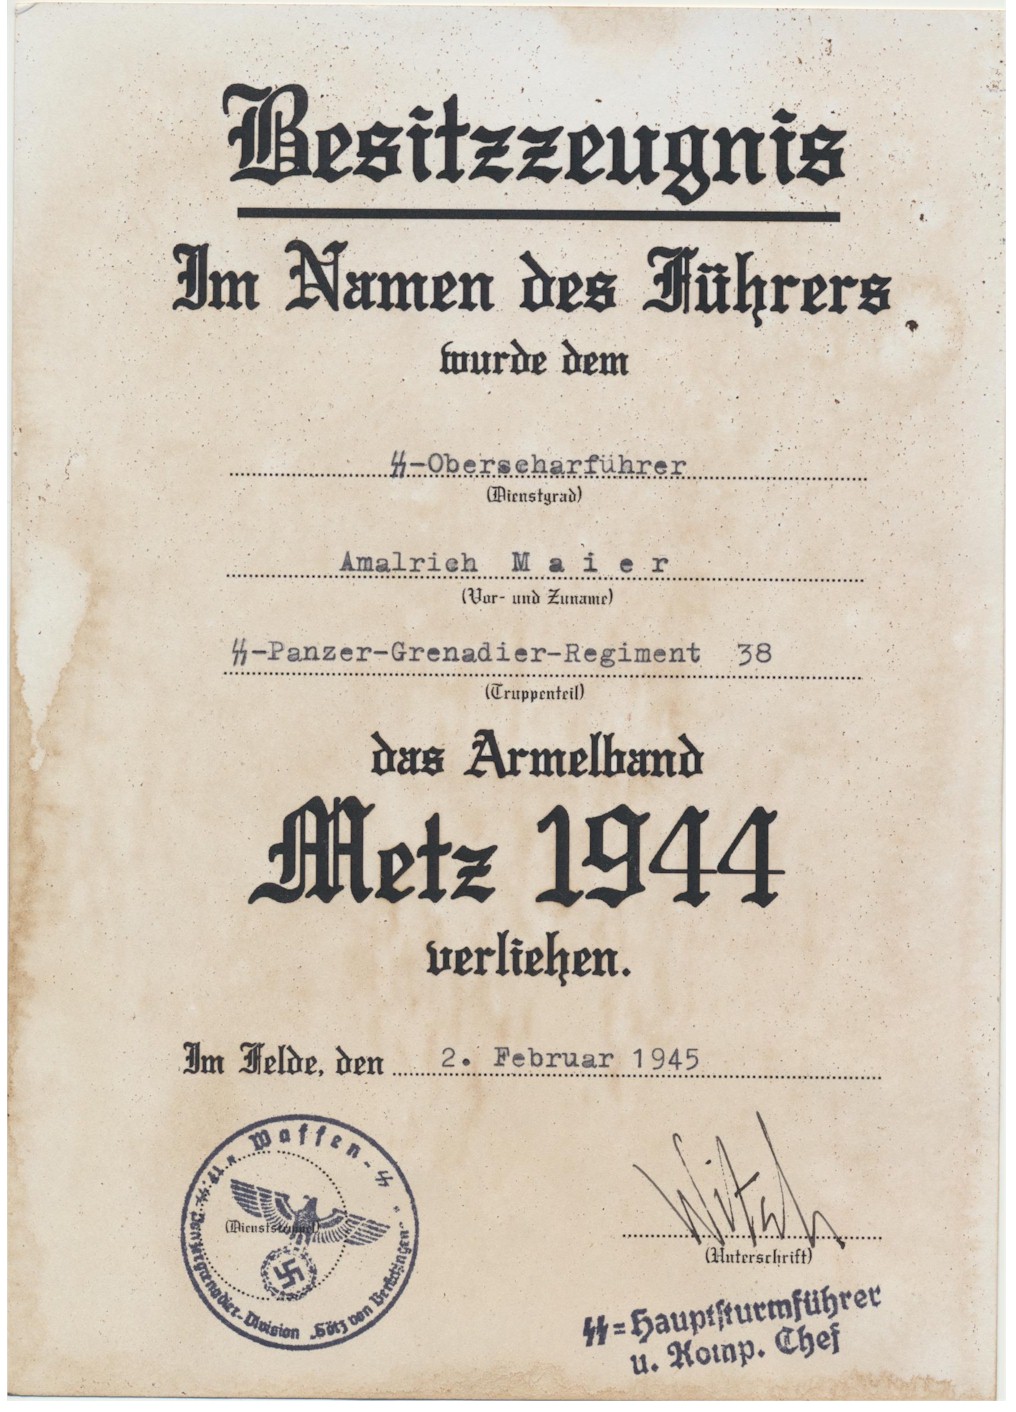 GERMAN CUFFTITLE "METZ 1944 " SS OBERSCHARFUHRER AMALRICH MAIER SS PZ GREN RGT 38 " GOTZ VON BERLICHINGEN" DOCUMENT 